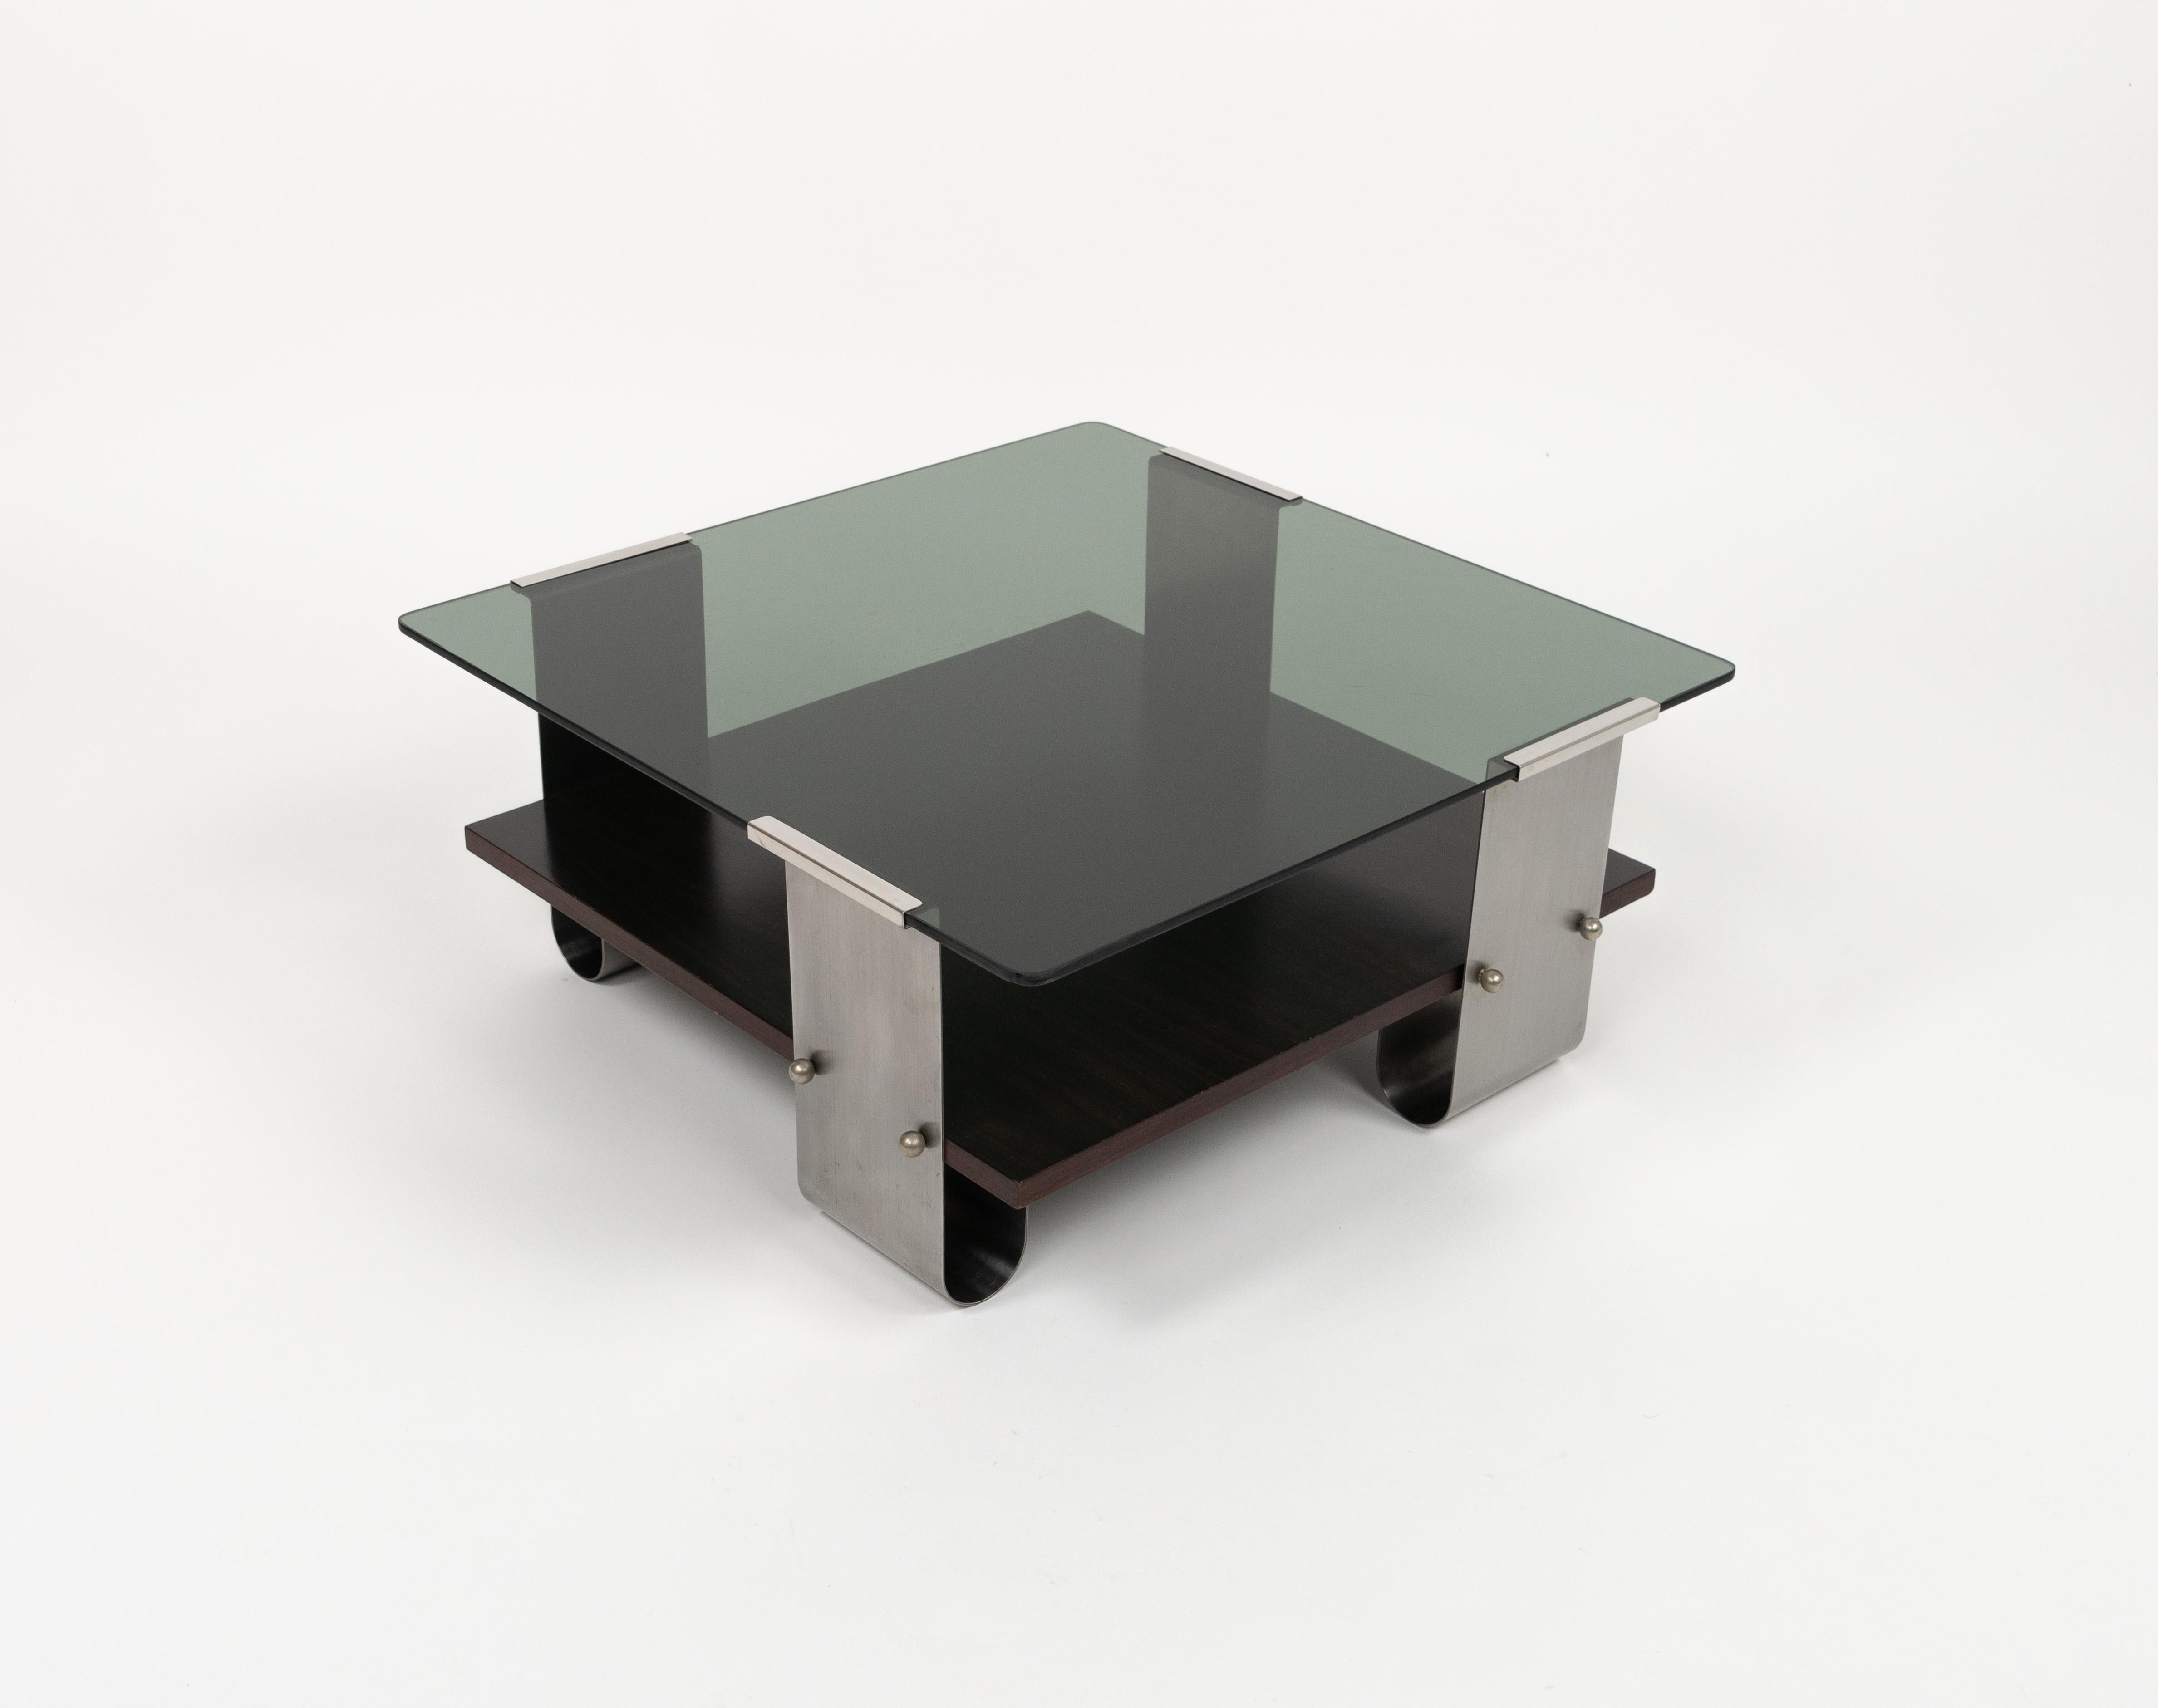 Magnifique table basse carrée du milieu du siècle en acier brossé courbé, bois et plateau en verre fumé, attribuée à François Monnet.

Fabriqué en France dans les années 1970.